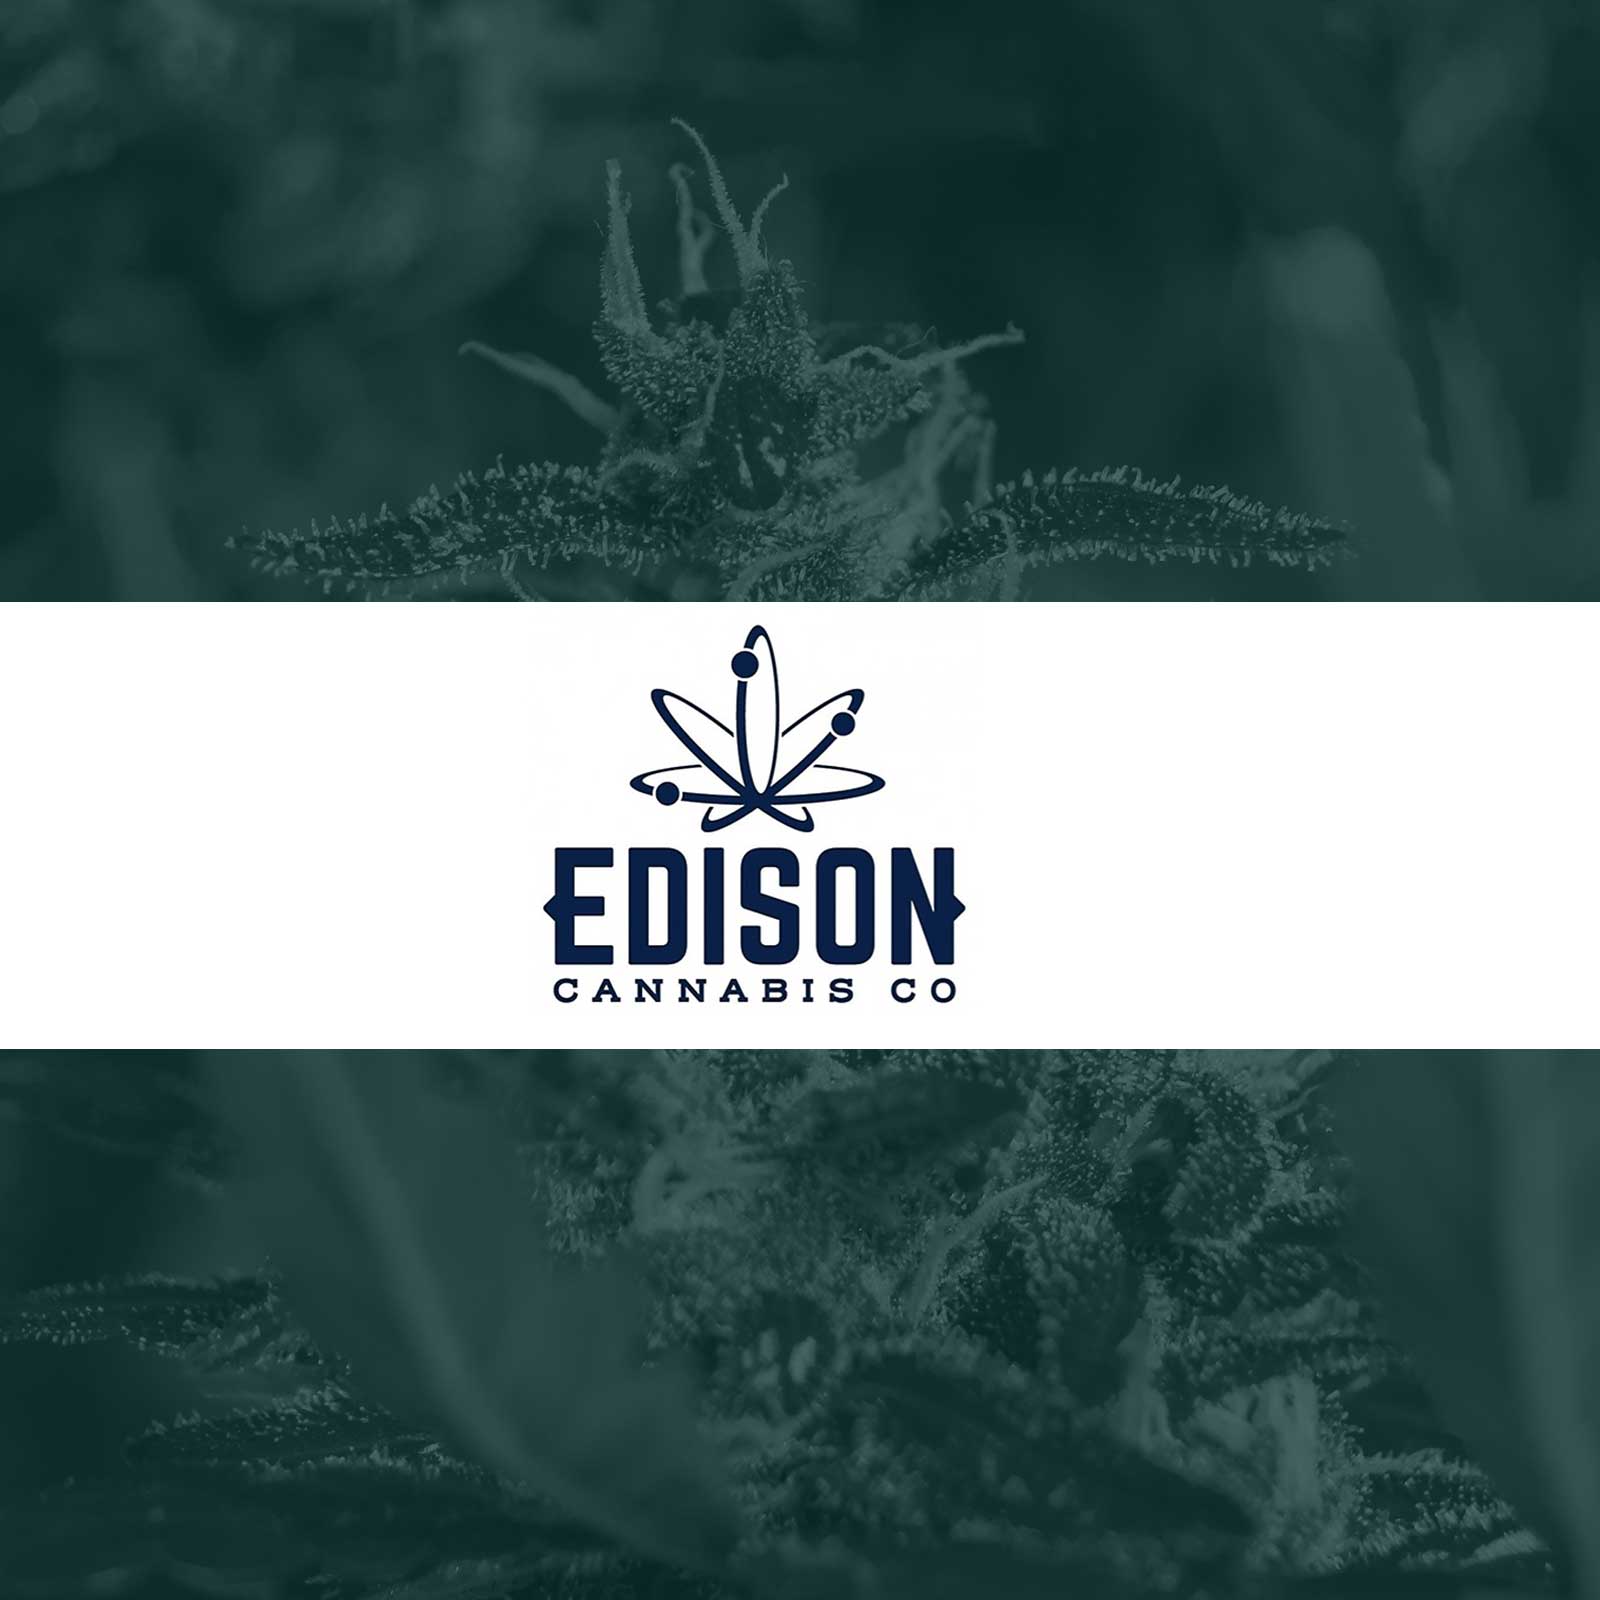 Edison Cannabis Co.